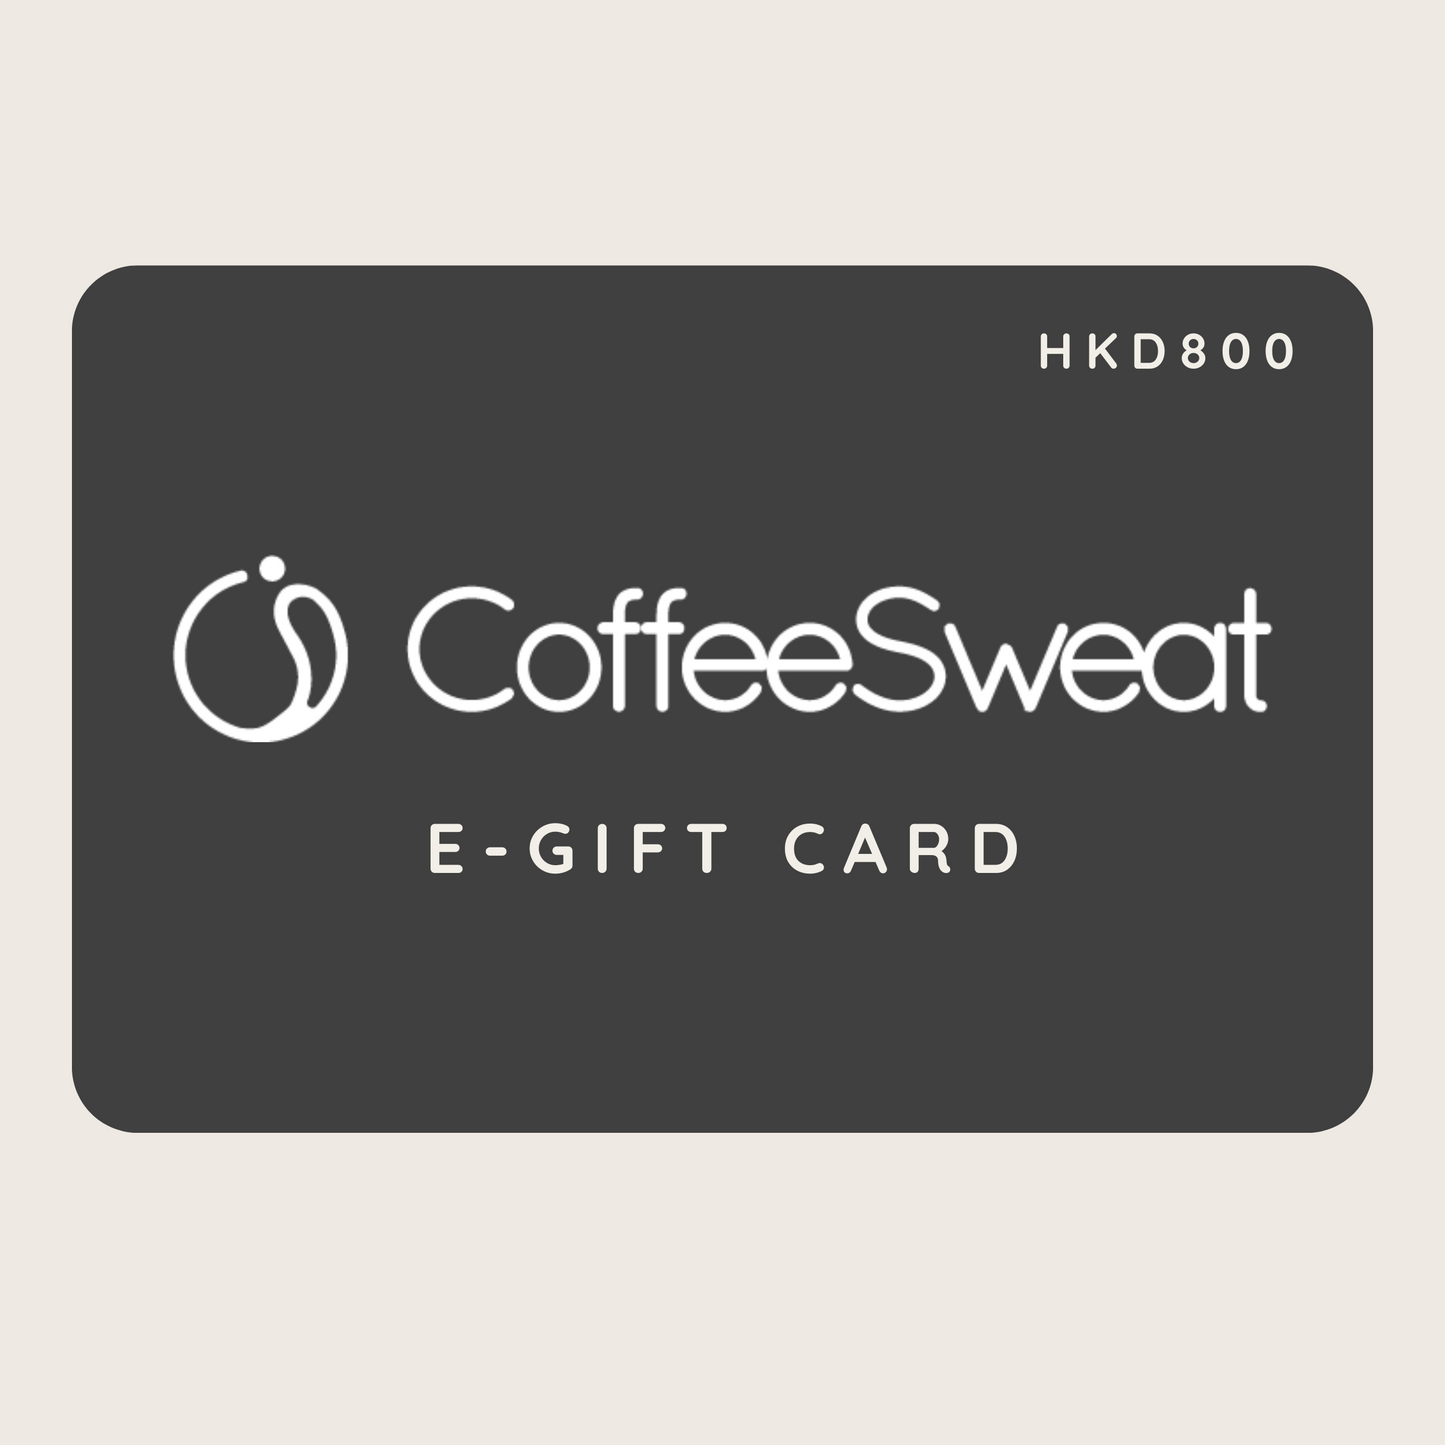 CoffeeSweat 電子禮品卡